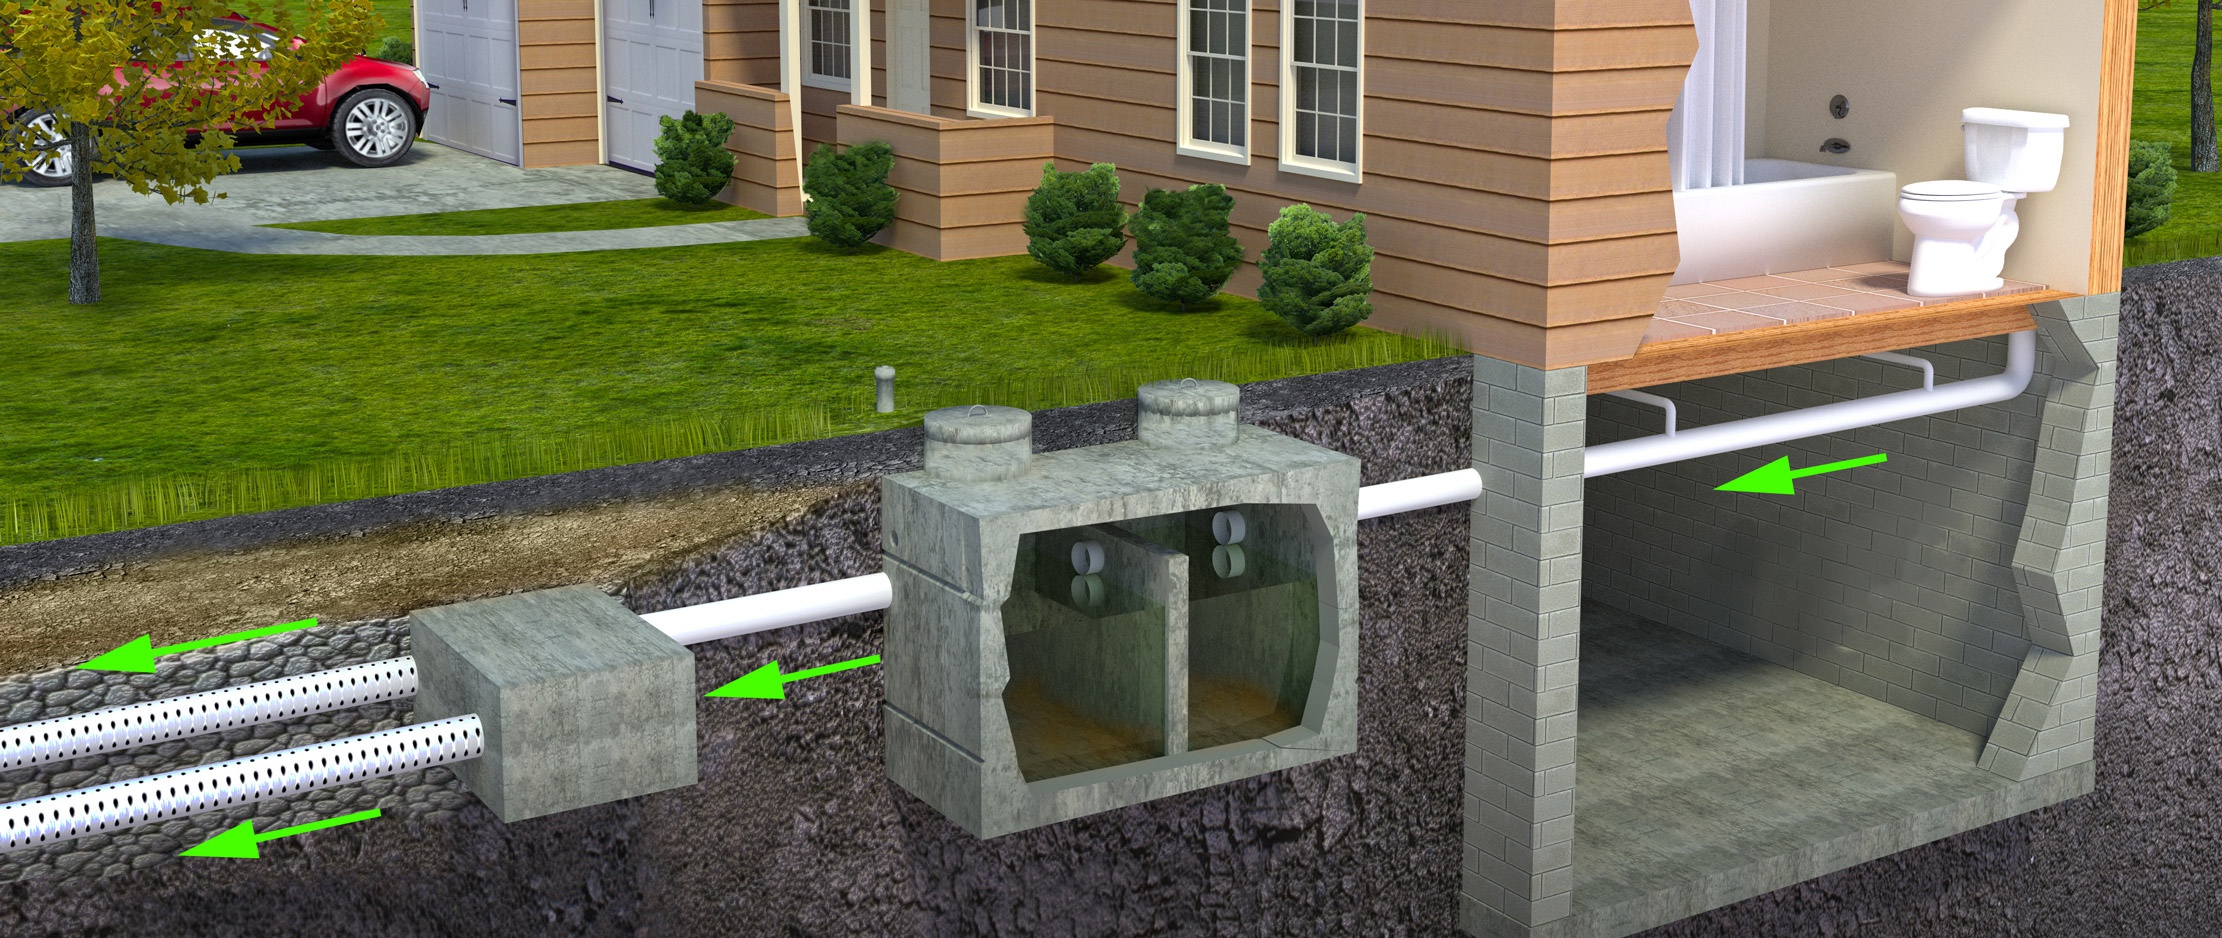 Comment installer la ventilation d'une fosse septique ?